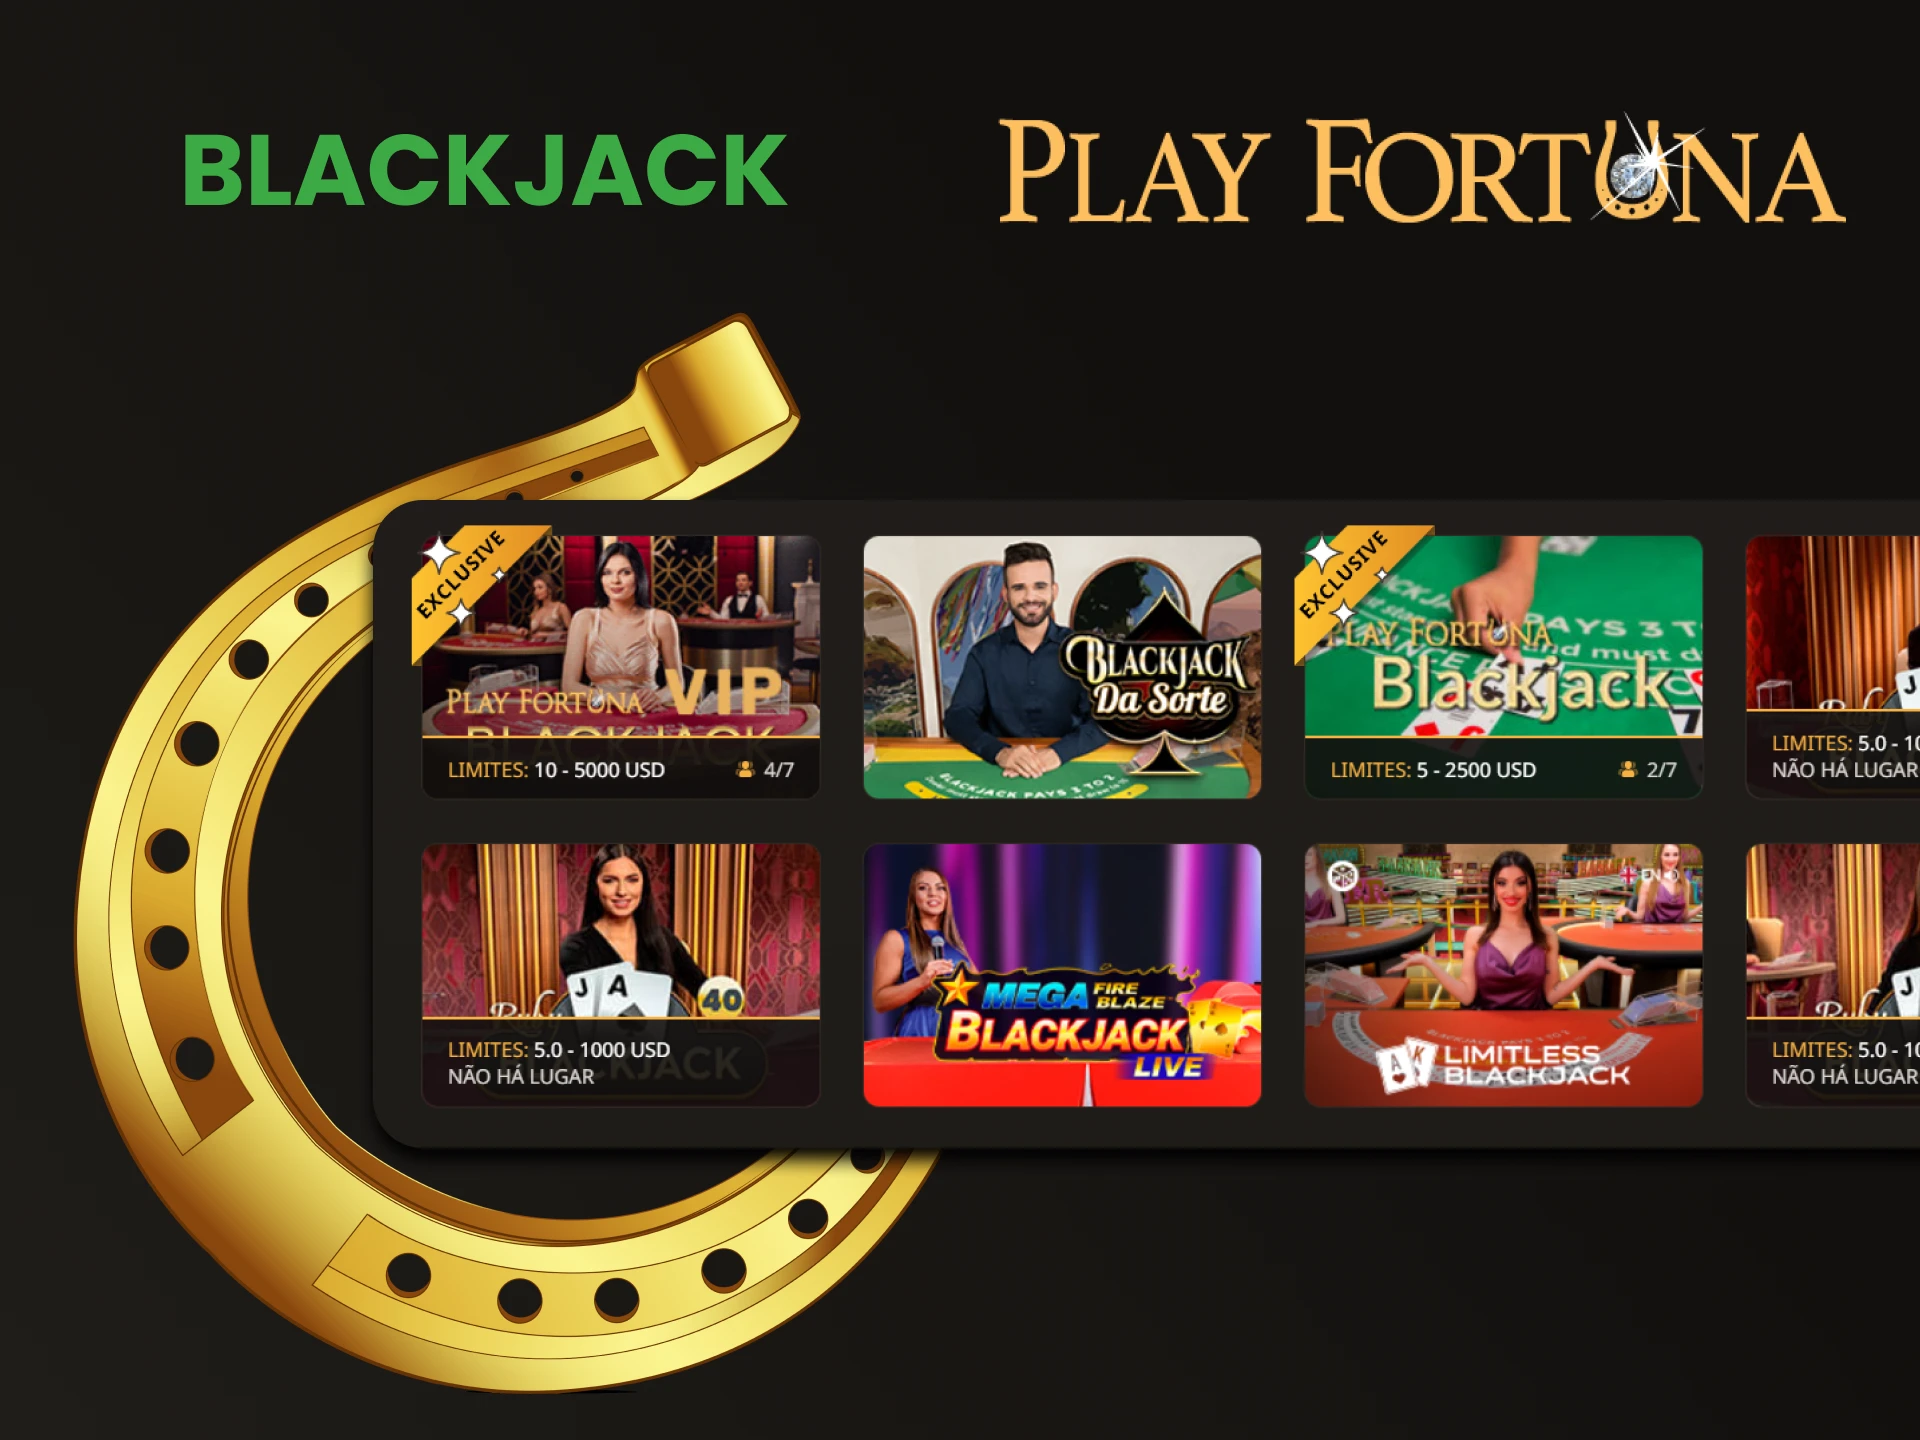 Recomendamos jogar Blackjack na seção de cassino ao vivo do Play Fortuna.